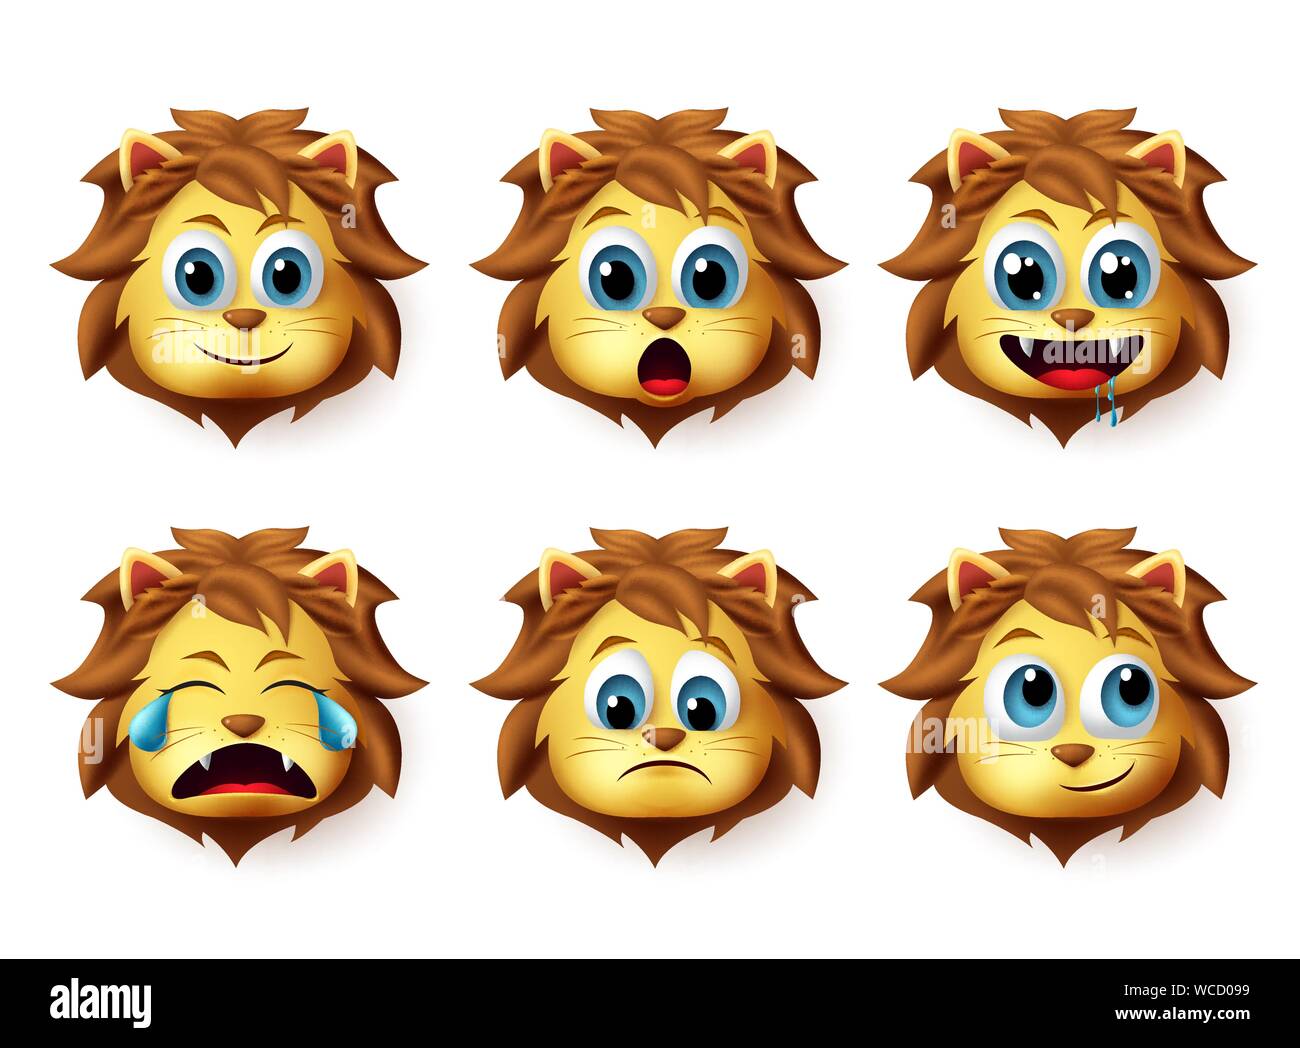 Emoticones de Animales León conjunto de vectores. Los leones emoji y emoticono en lindo feliz expresión facial aislado en fondo blanco. Ilustración vectorial. Ilustración del Vector